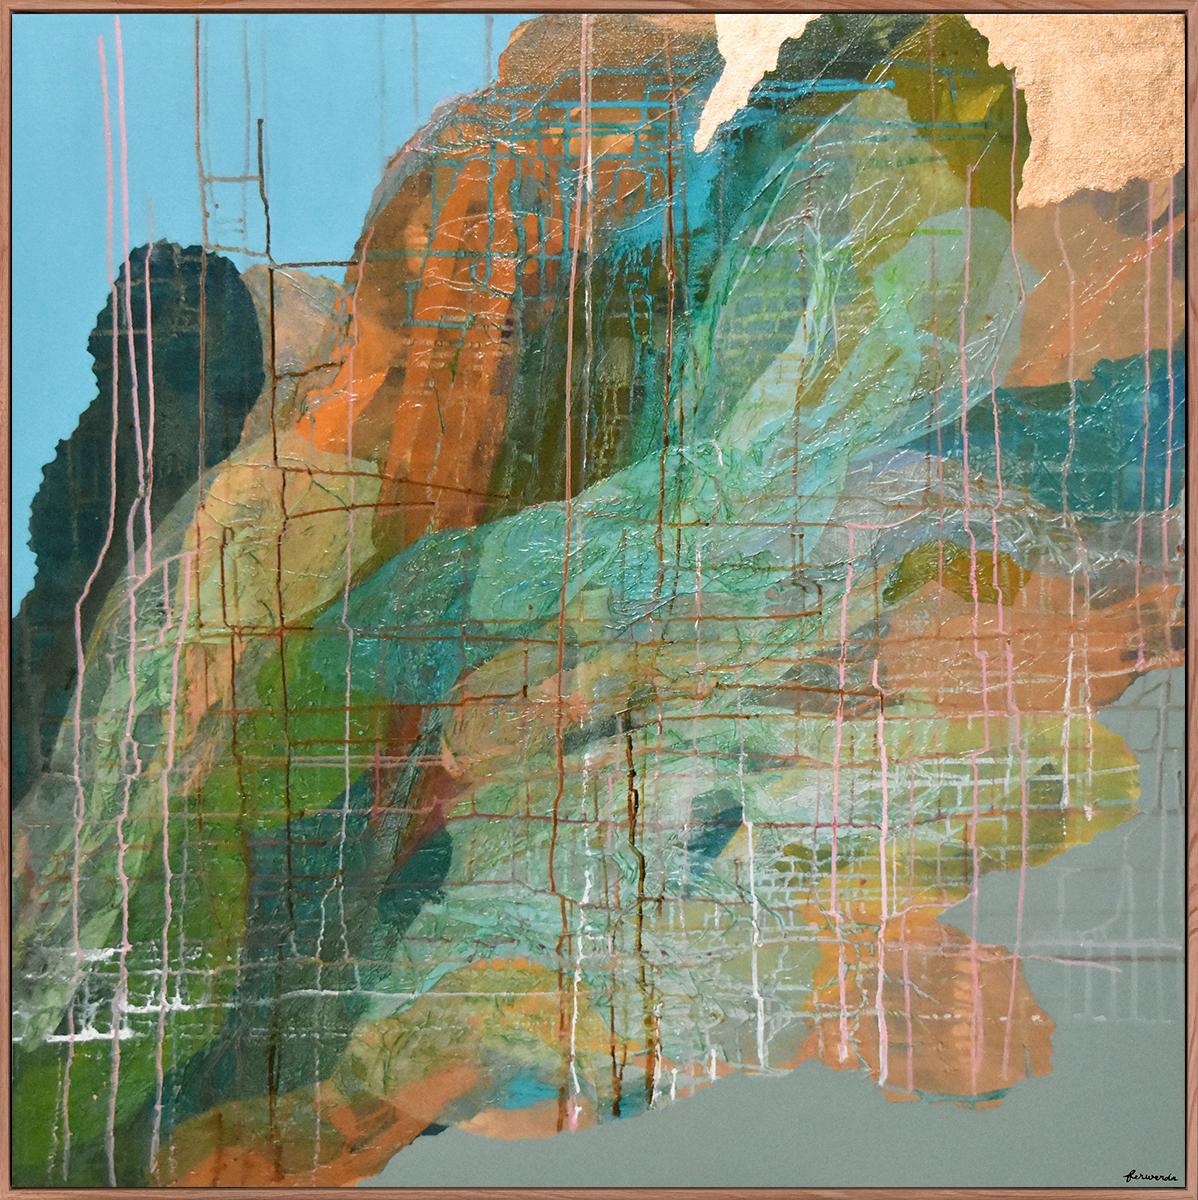 Bottlebrush Grass-original modern abstract painting-contemporary Art- Artwork